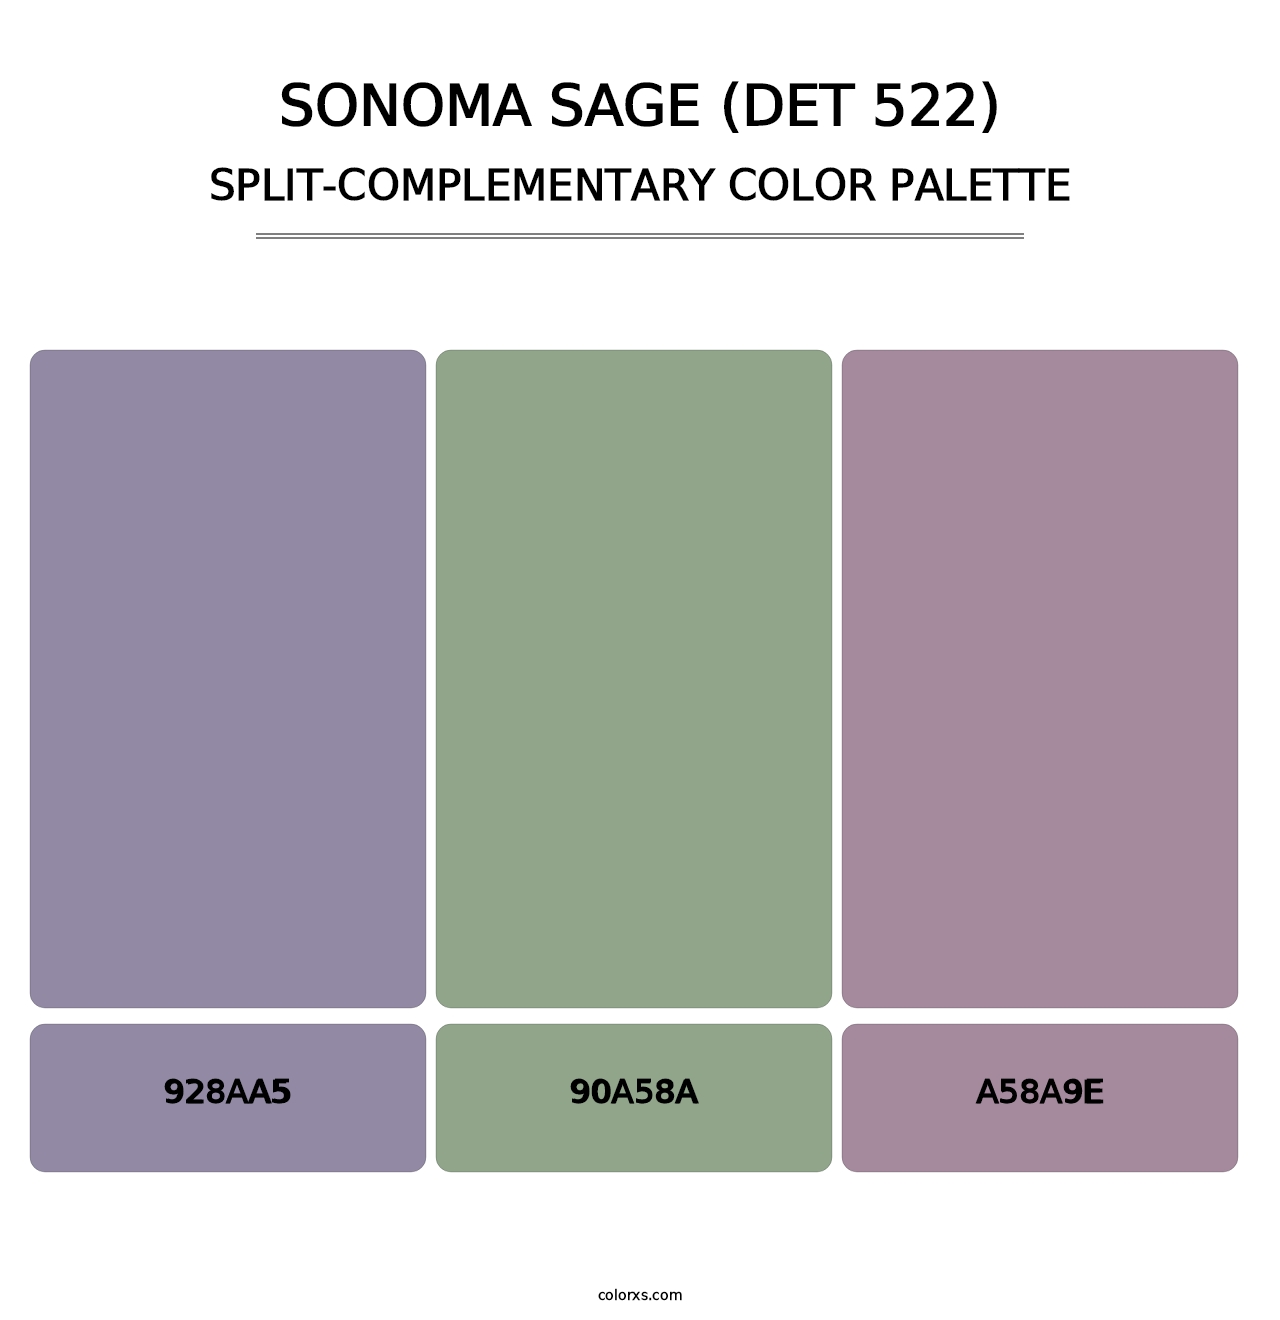 Sonoma Sage (DET 522) - Split-Complementary Color Palette